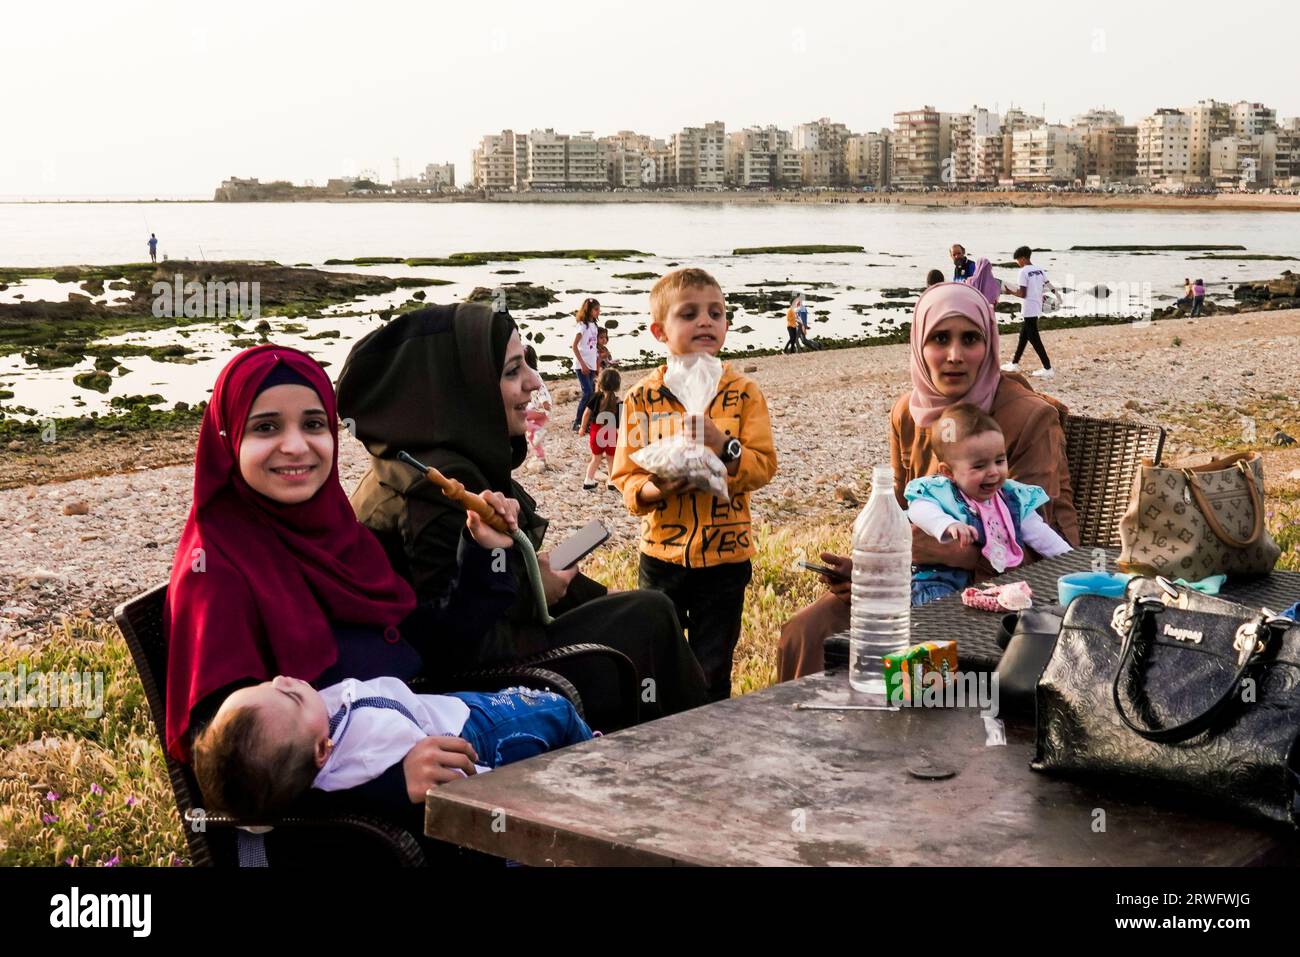 Zum Fest des Fastenbrechens (Eid Mubarak) am Ende des Ramadan feiern die Menschen an der Strandpromenade  Corniche am Strand. Tripoli, Libanon. Stock Photo